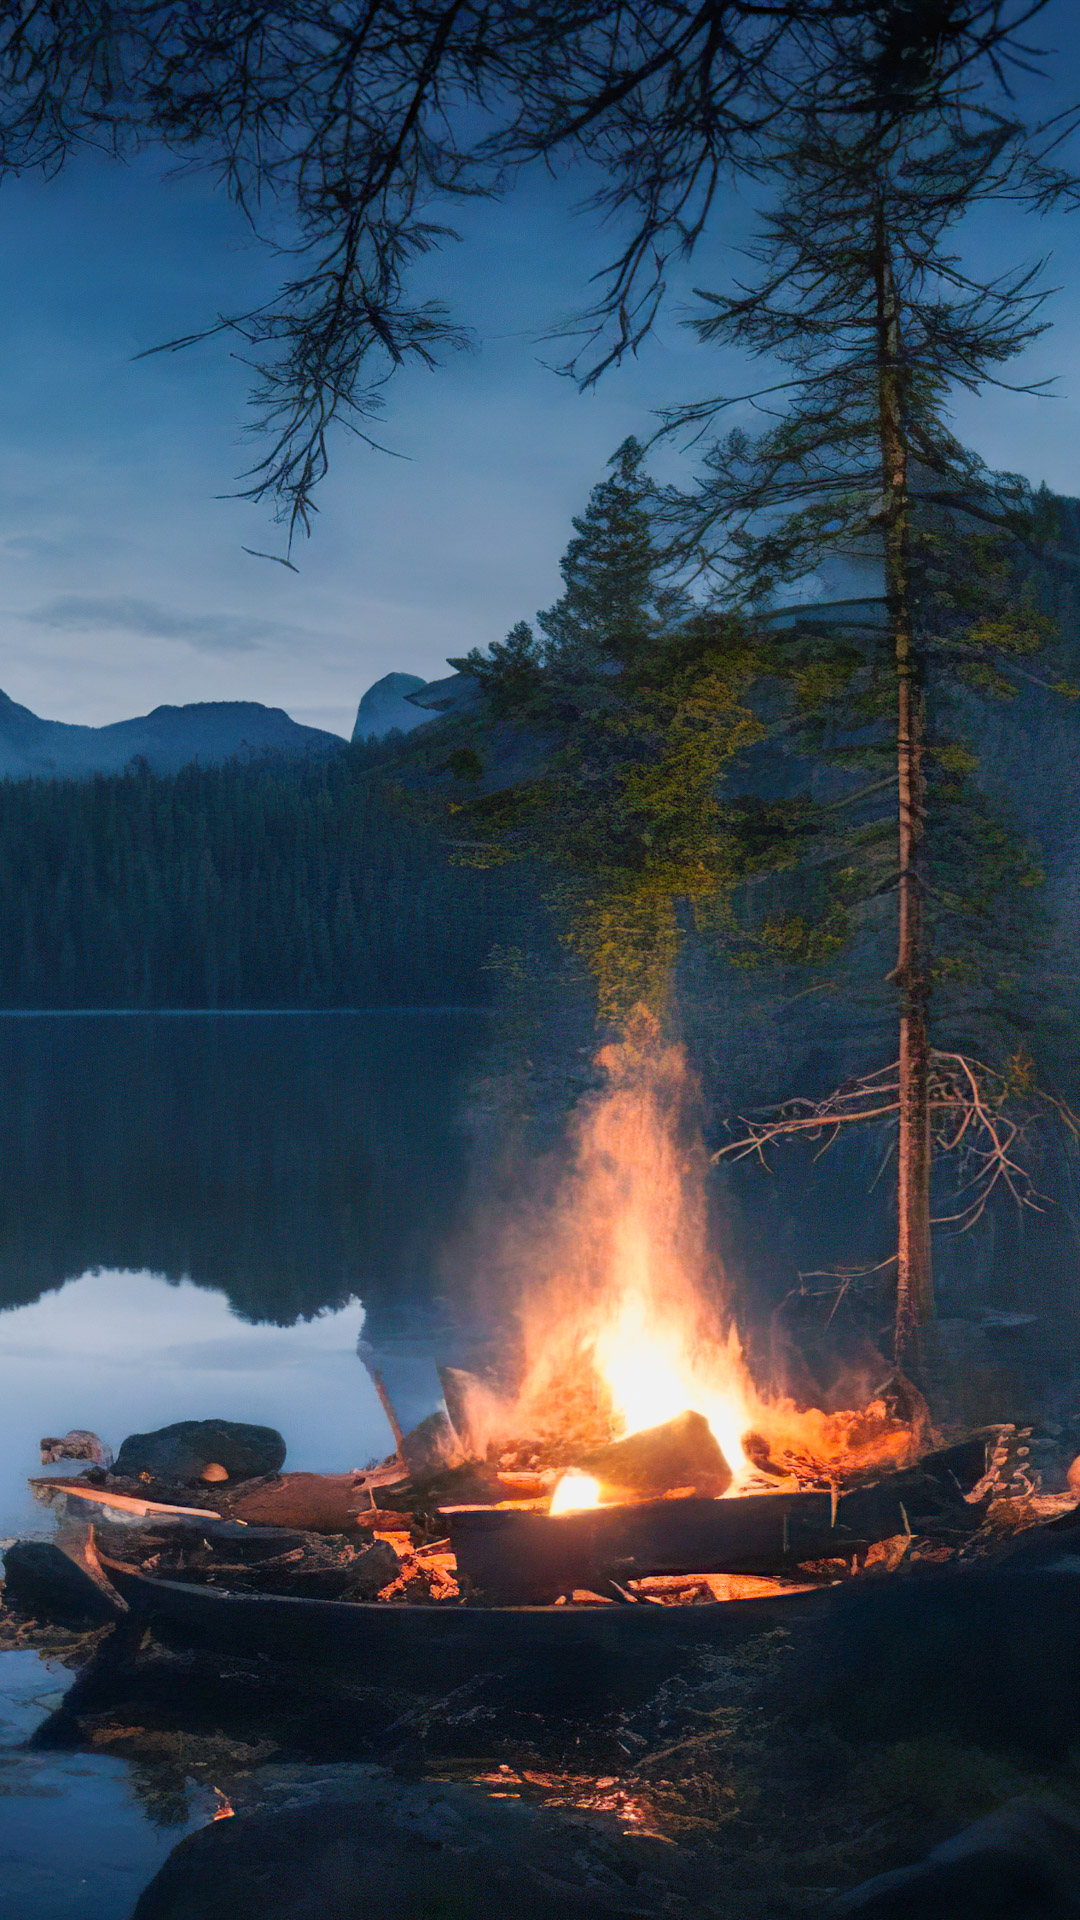 Ornez votre iPhone avec notre fond d'écran de nature de haute qualité, présentant un campement au bord d'un lac serein avec un feu de camp vacillant, entouré d'une forêt sombre et boisée.